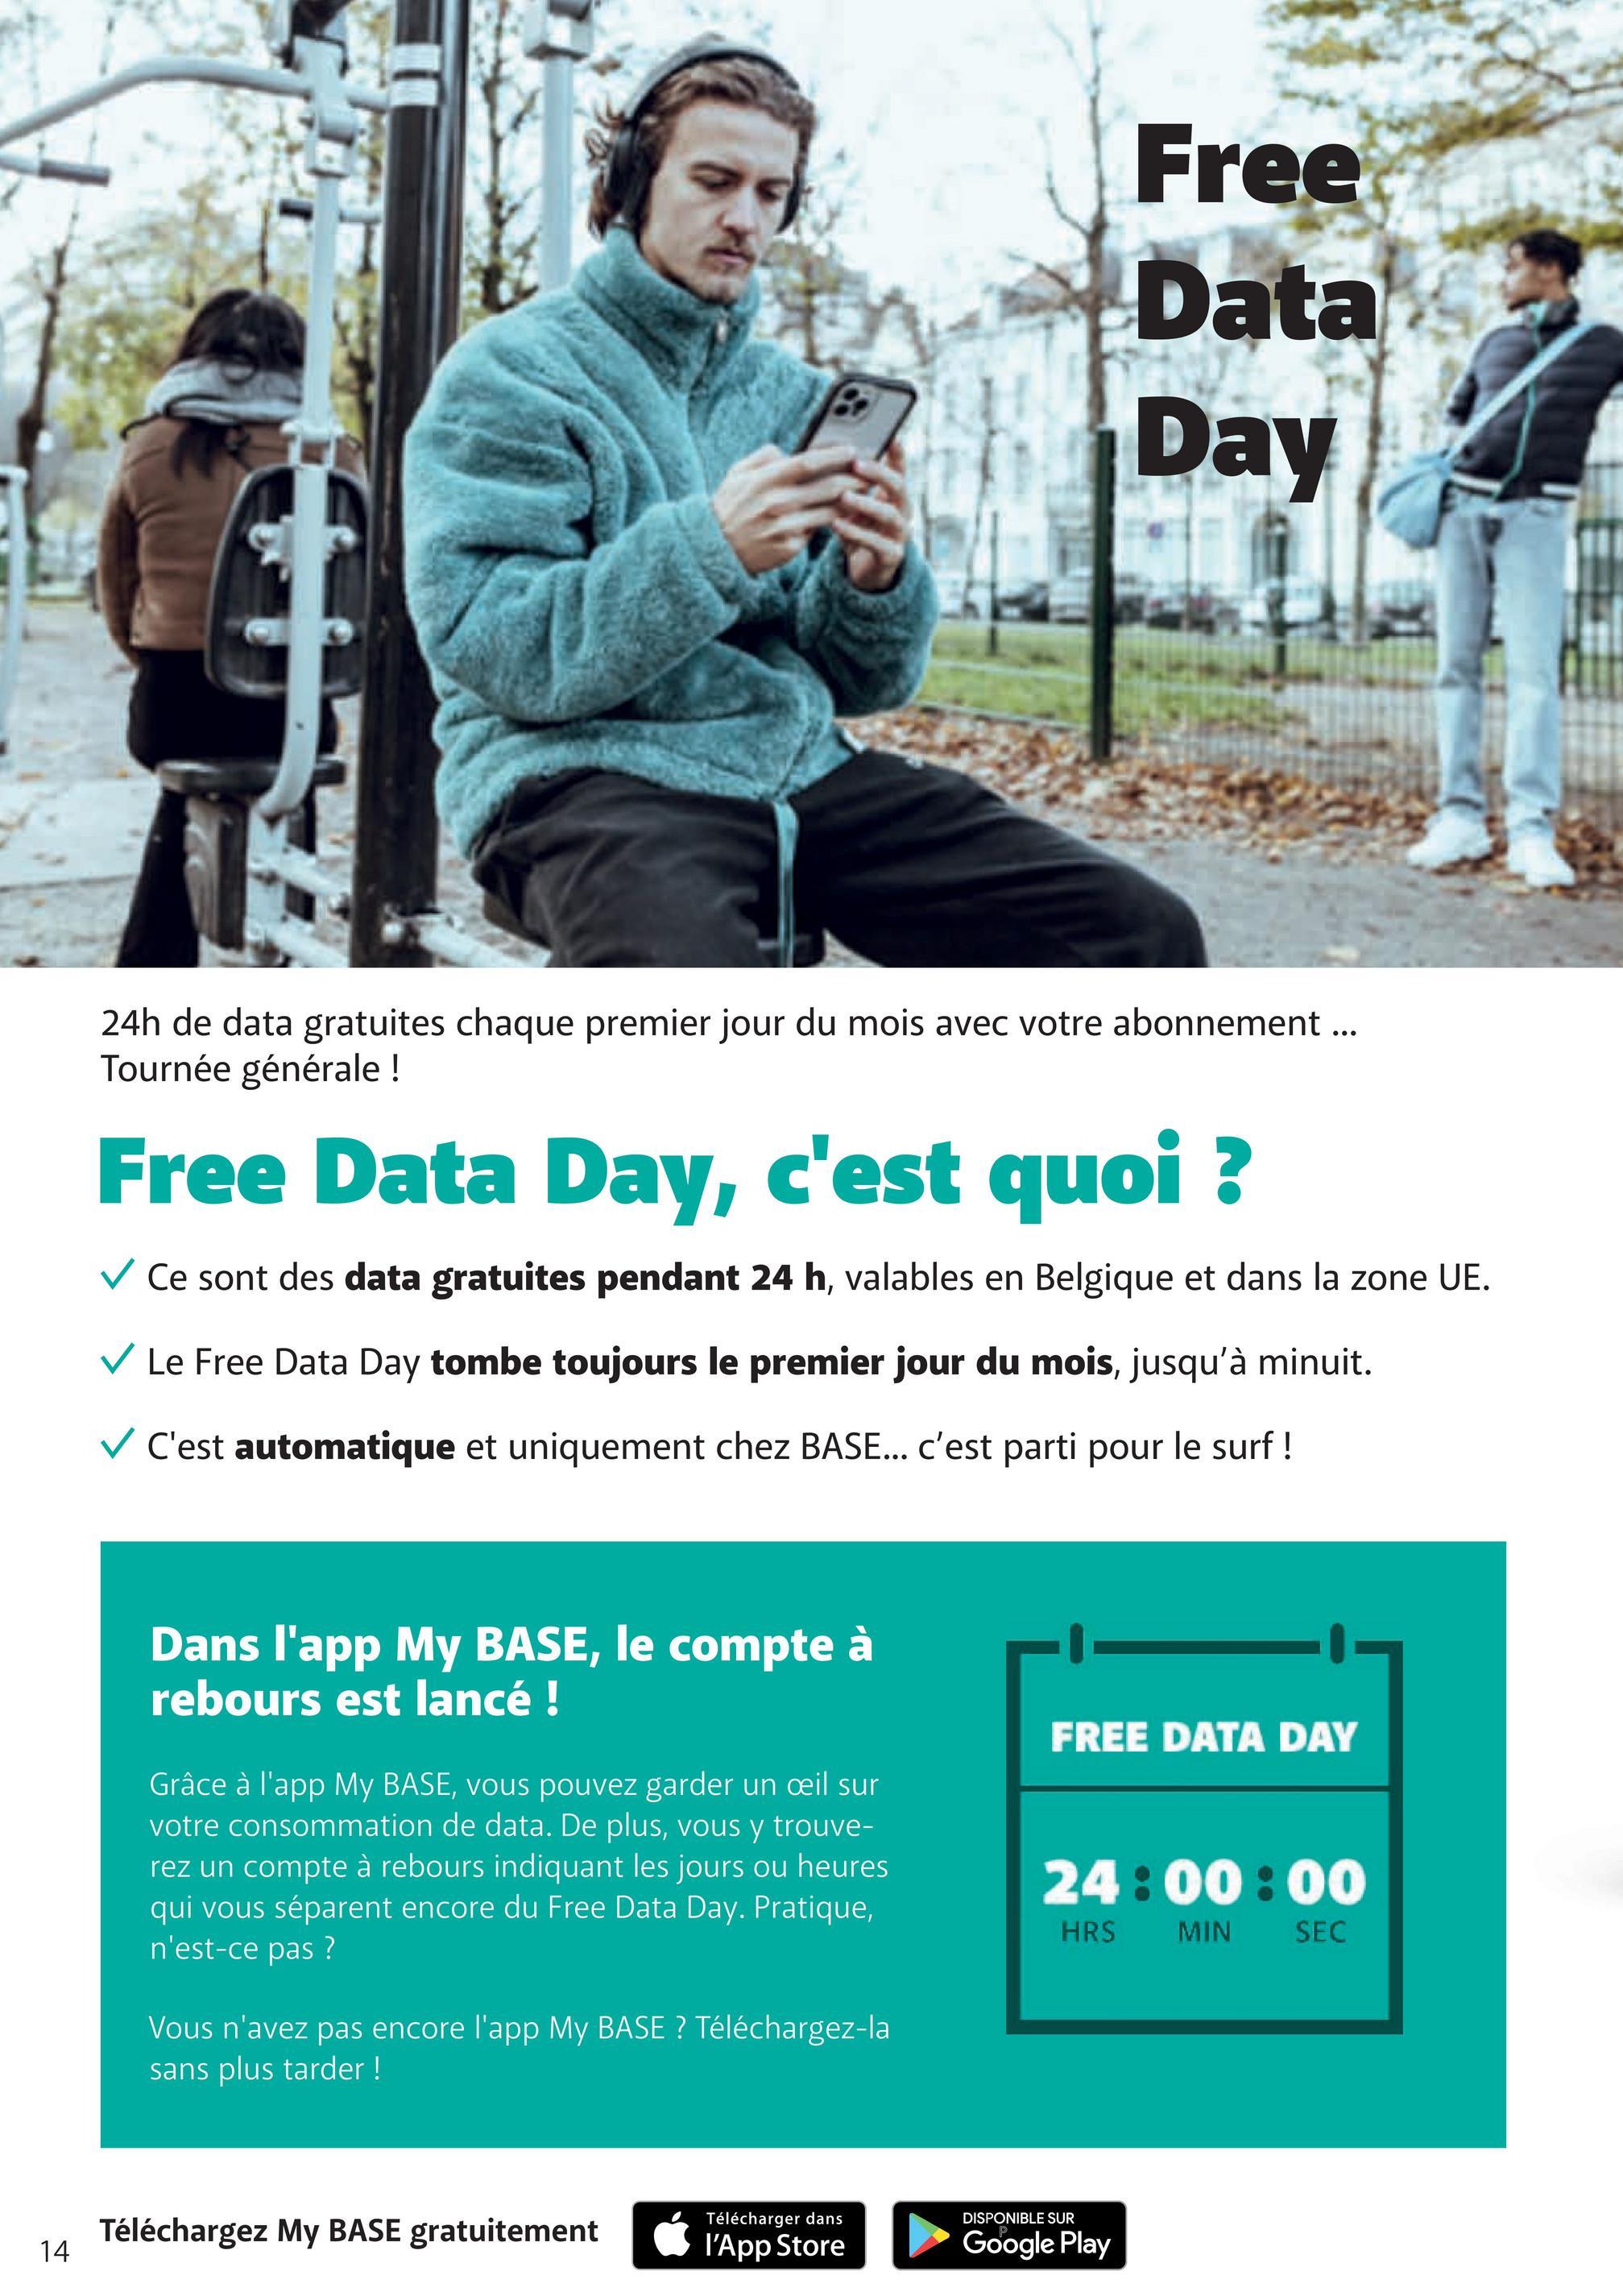 Free
Data
Day
24h de data gratuites chaque premier jour du mois avec votre abonnement...
Tournée générale !
Free Data Day, c'est quoi ?
✓ Ce sont des data gratuites pendant 24 h, valables en Belgique et dans la zone UE.
✓ Le Free Data Day tombe toujours le premier jour du mois, jusqu'à minuit.
✓ C'est automatique et uniquement chez BASE... c'est parti pour le surf !
Dans l'app My BASE, le compte à
rebours est lancé !
Grâce à l'app My BASE, vous pouvez garder un oeil sur
votre consommation de data. De plus, vous y trouve-
rez un compte à rebours indiquant les jours ou heures
qui vous séparent encore du Free Data Day. Pratique,
n'est-ce pas ?
Vous n'avez pas encore l'app My BASE? Téléchargez-la
sans plus tarder!
FREE DATA DAY
24:00:00
HRS
MIN
SEC
14
Téléchargez My BASE gratuitement
Télécharger dans
DISPONIBLE SUR
l'App Store
Google Play